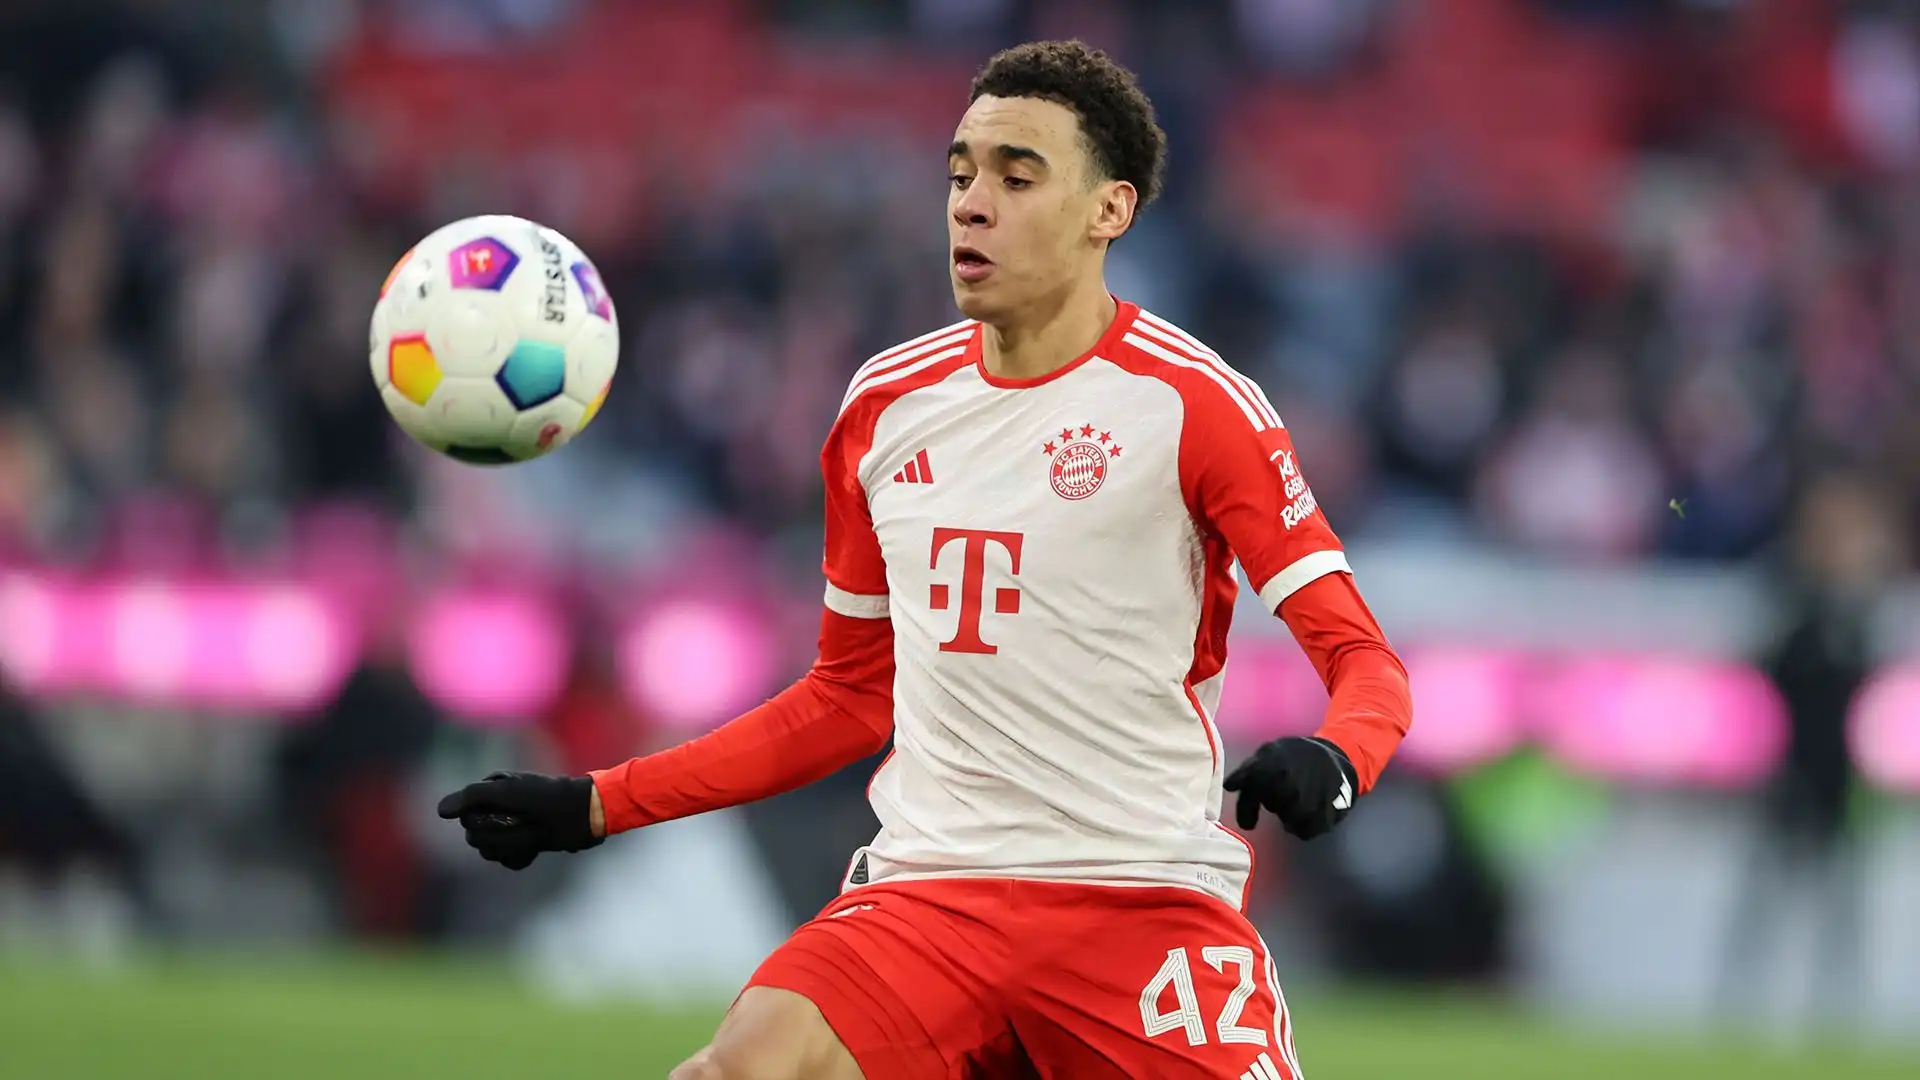 Senza dubbio è tra i giovani più forti al mondo: il Bayern Monaco non vuole perderlo